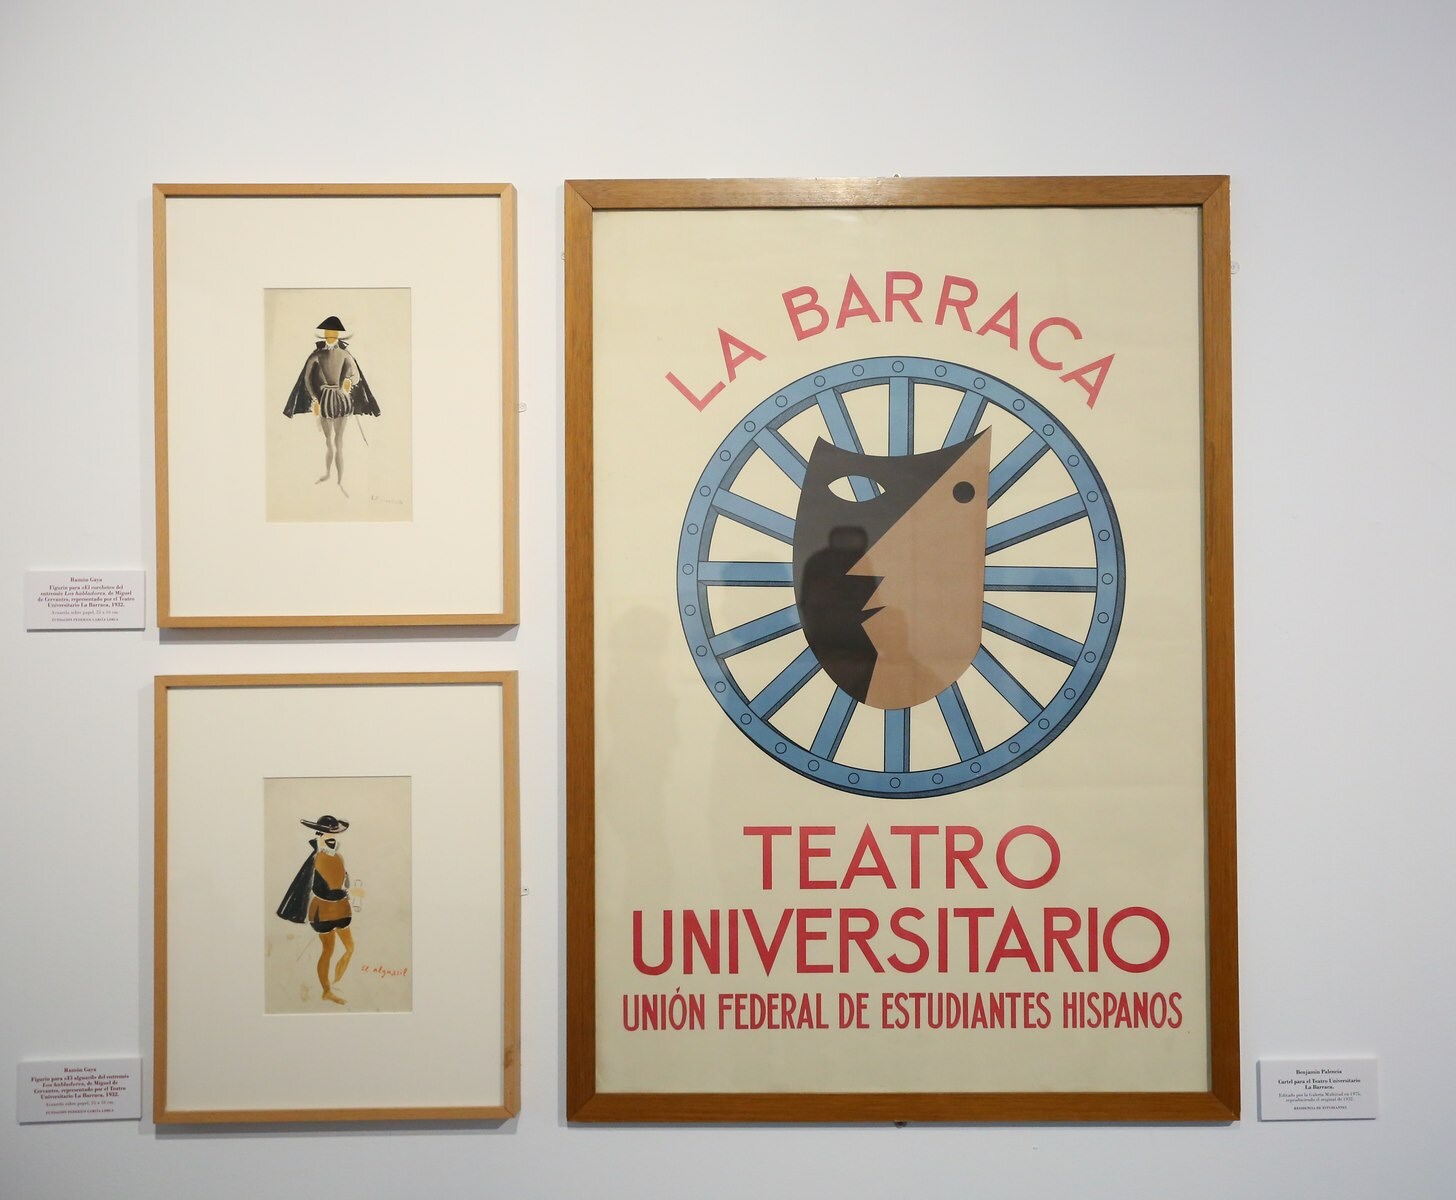 Cartel y dibujos para el Teatro Universitario La Barranca, de Benjamín Prados. Residencia de Estudiantes.